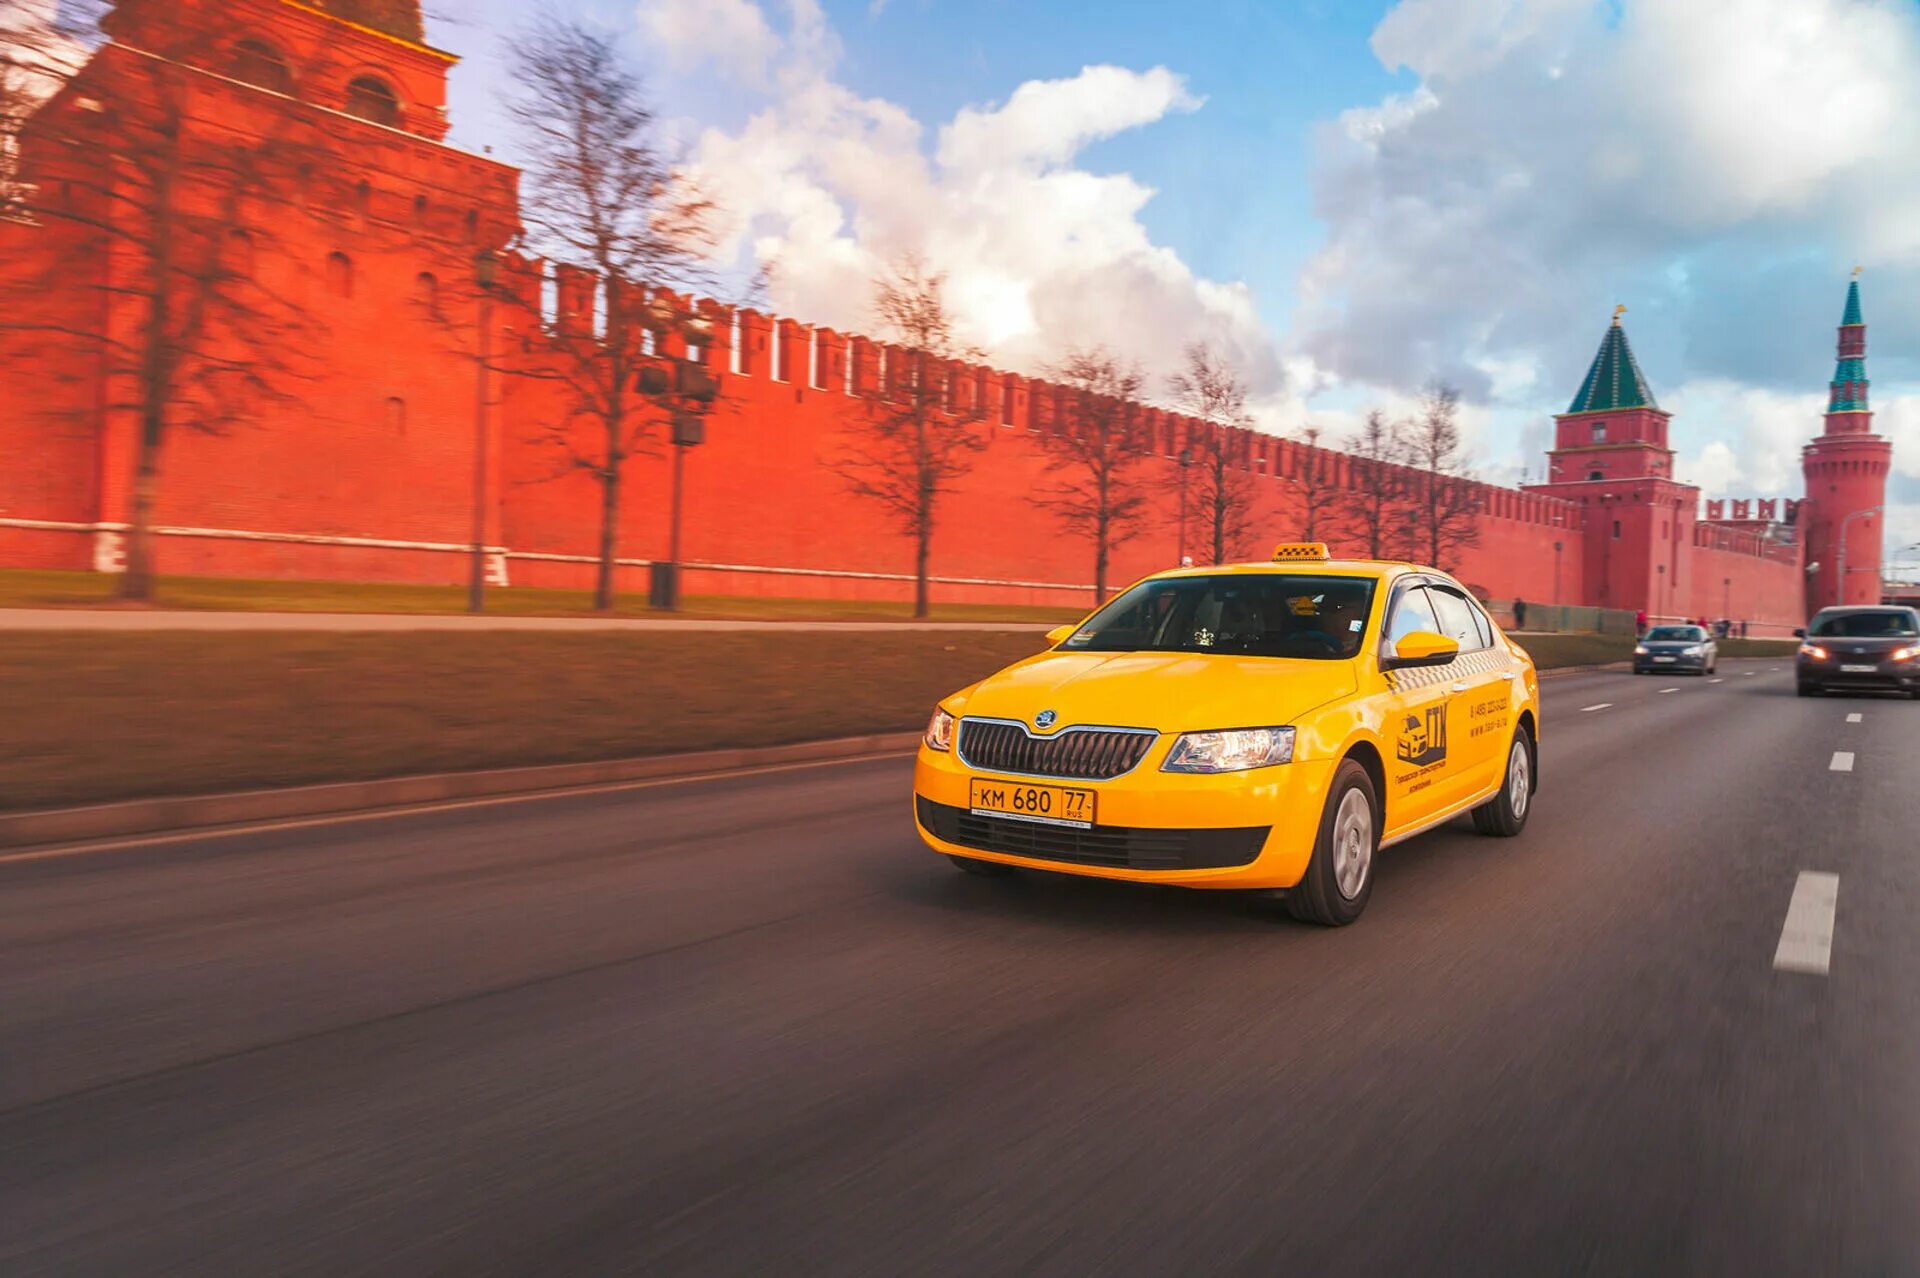 Фото такси машин. Такси Москва. Московское такси. Фото такси. Машина такси на дороге.